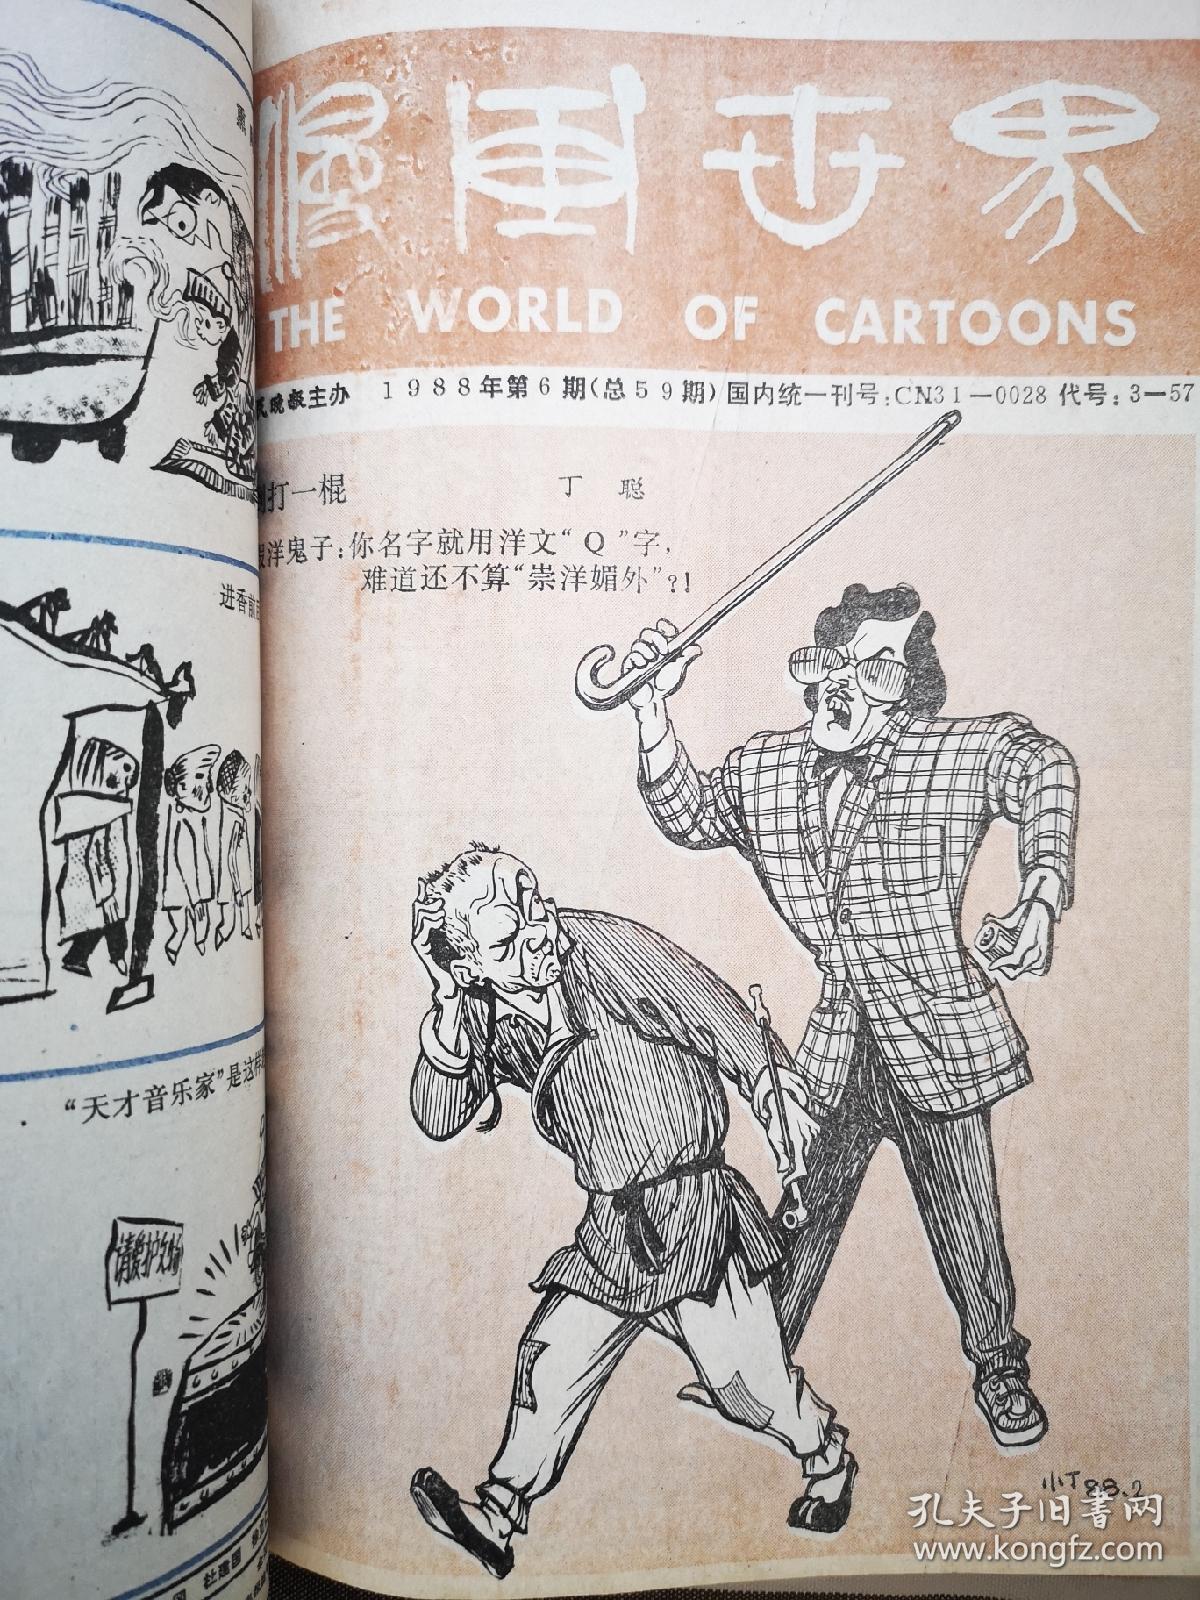 漫画世界1988年1—7，10—17，22期，共16期合订本